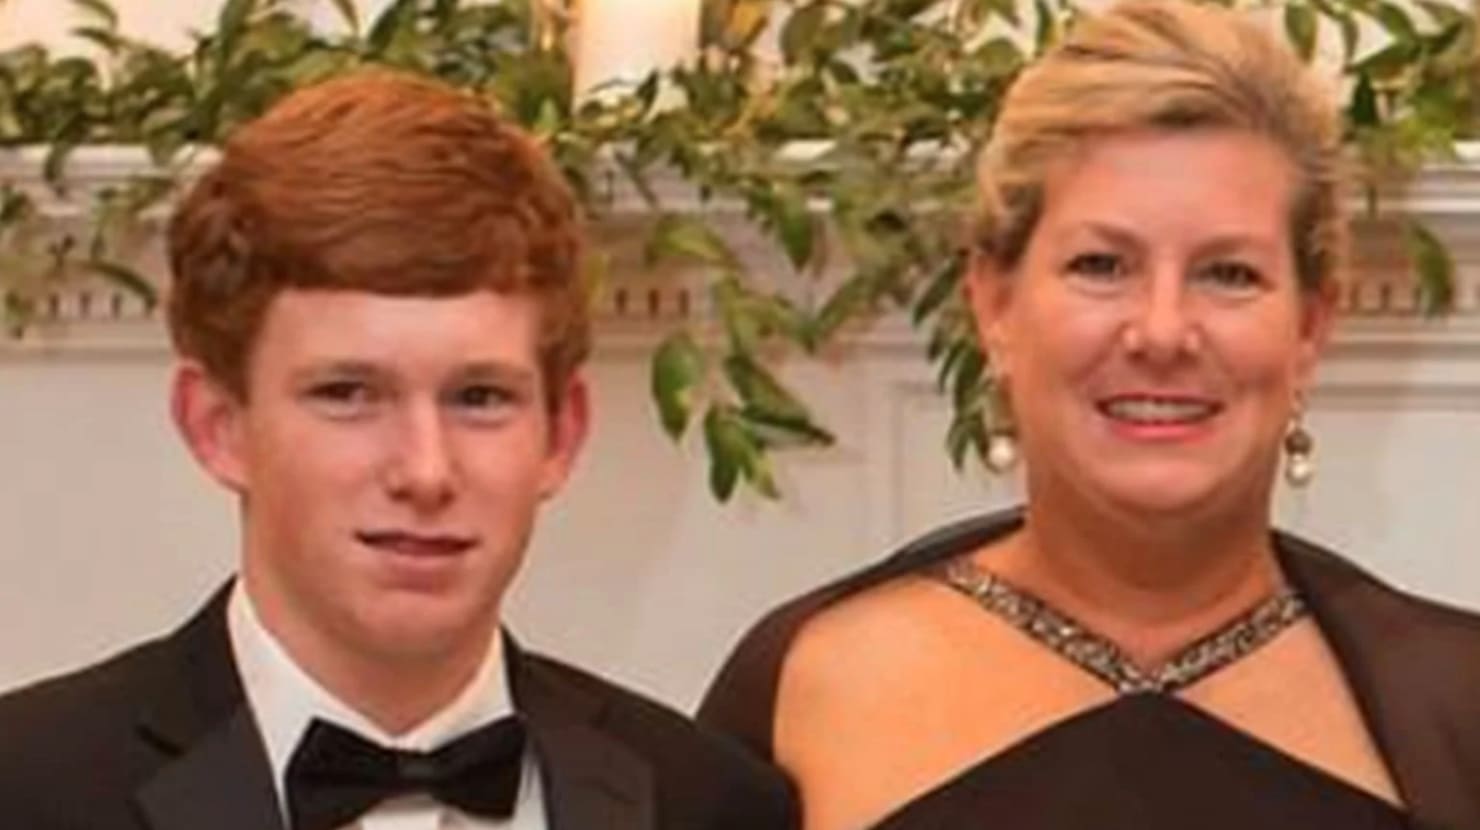 La exnovia del hijo asesinado de Alex Murdaugh demanda por ‘desfiguración’ en un accidente de barco